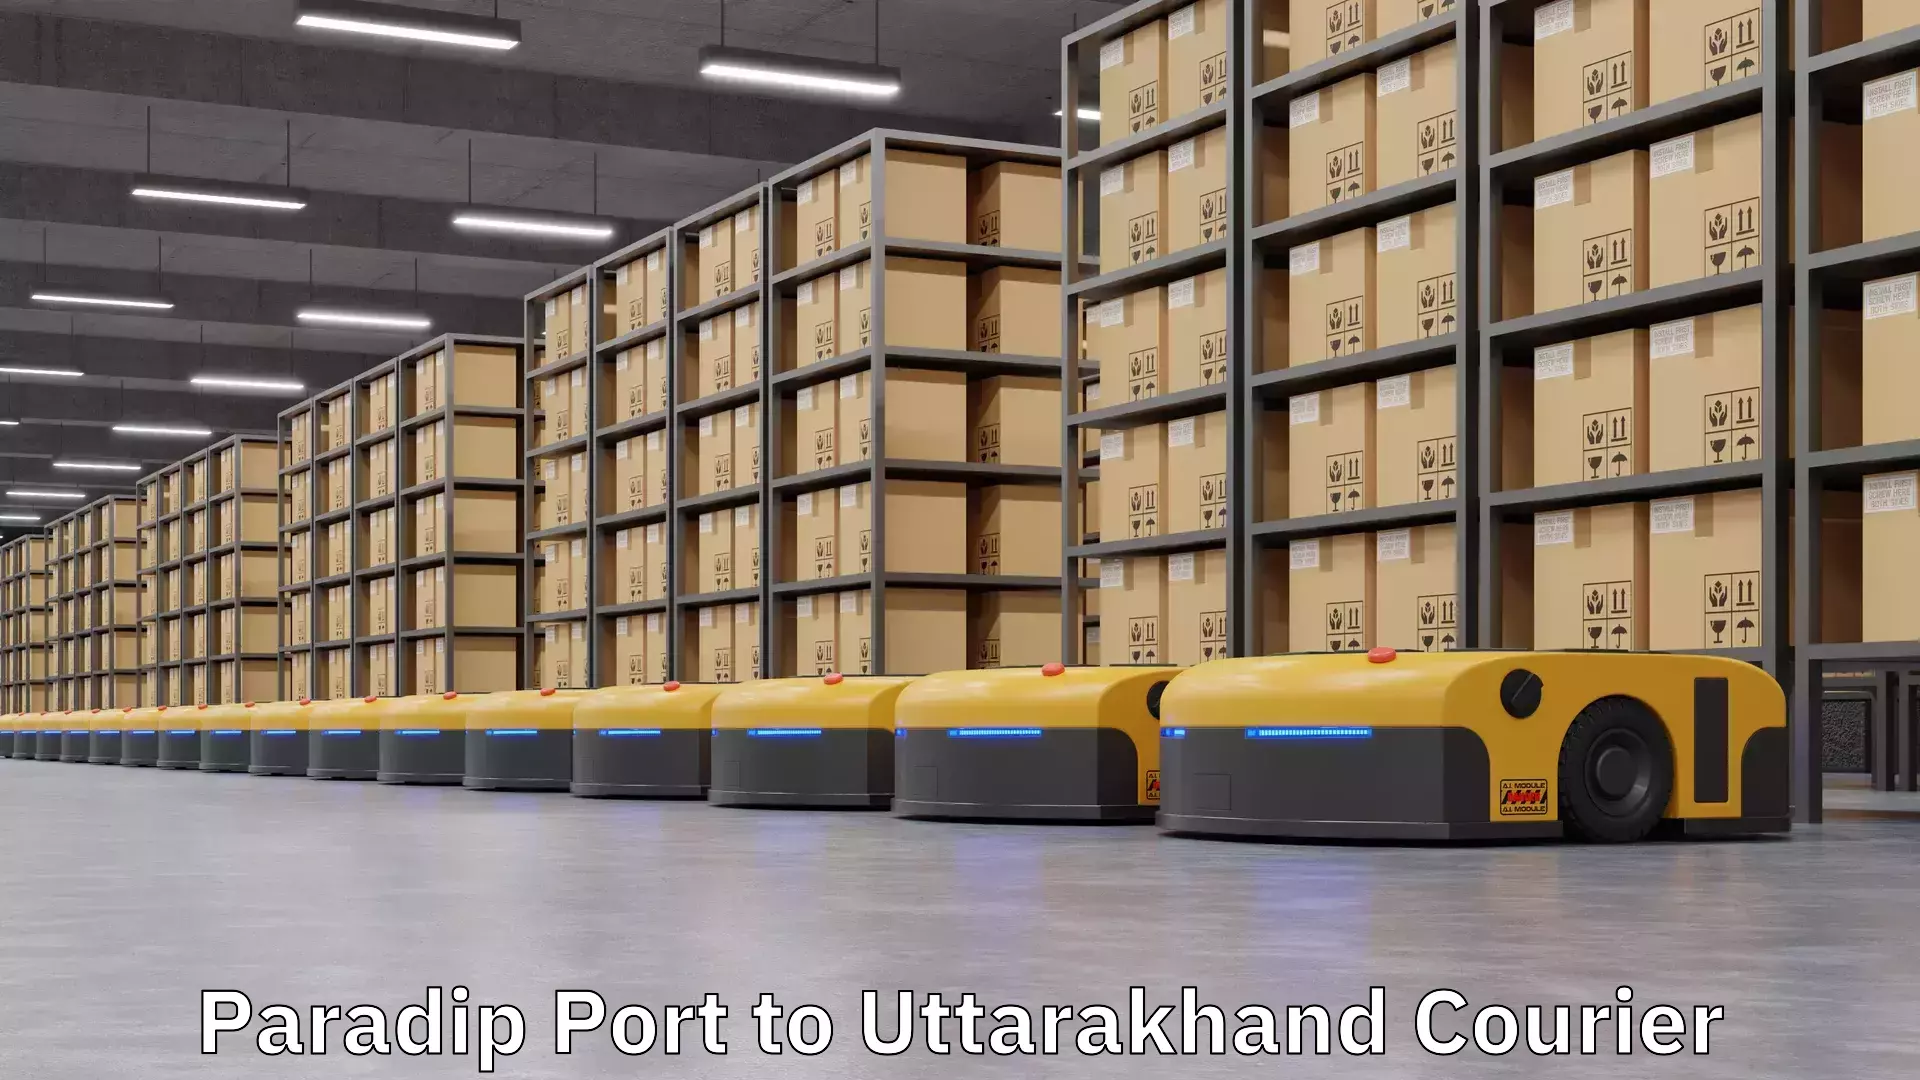 Pharmaceutical courier Paradip Port to Uttarakhand